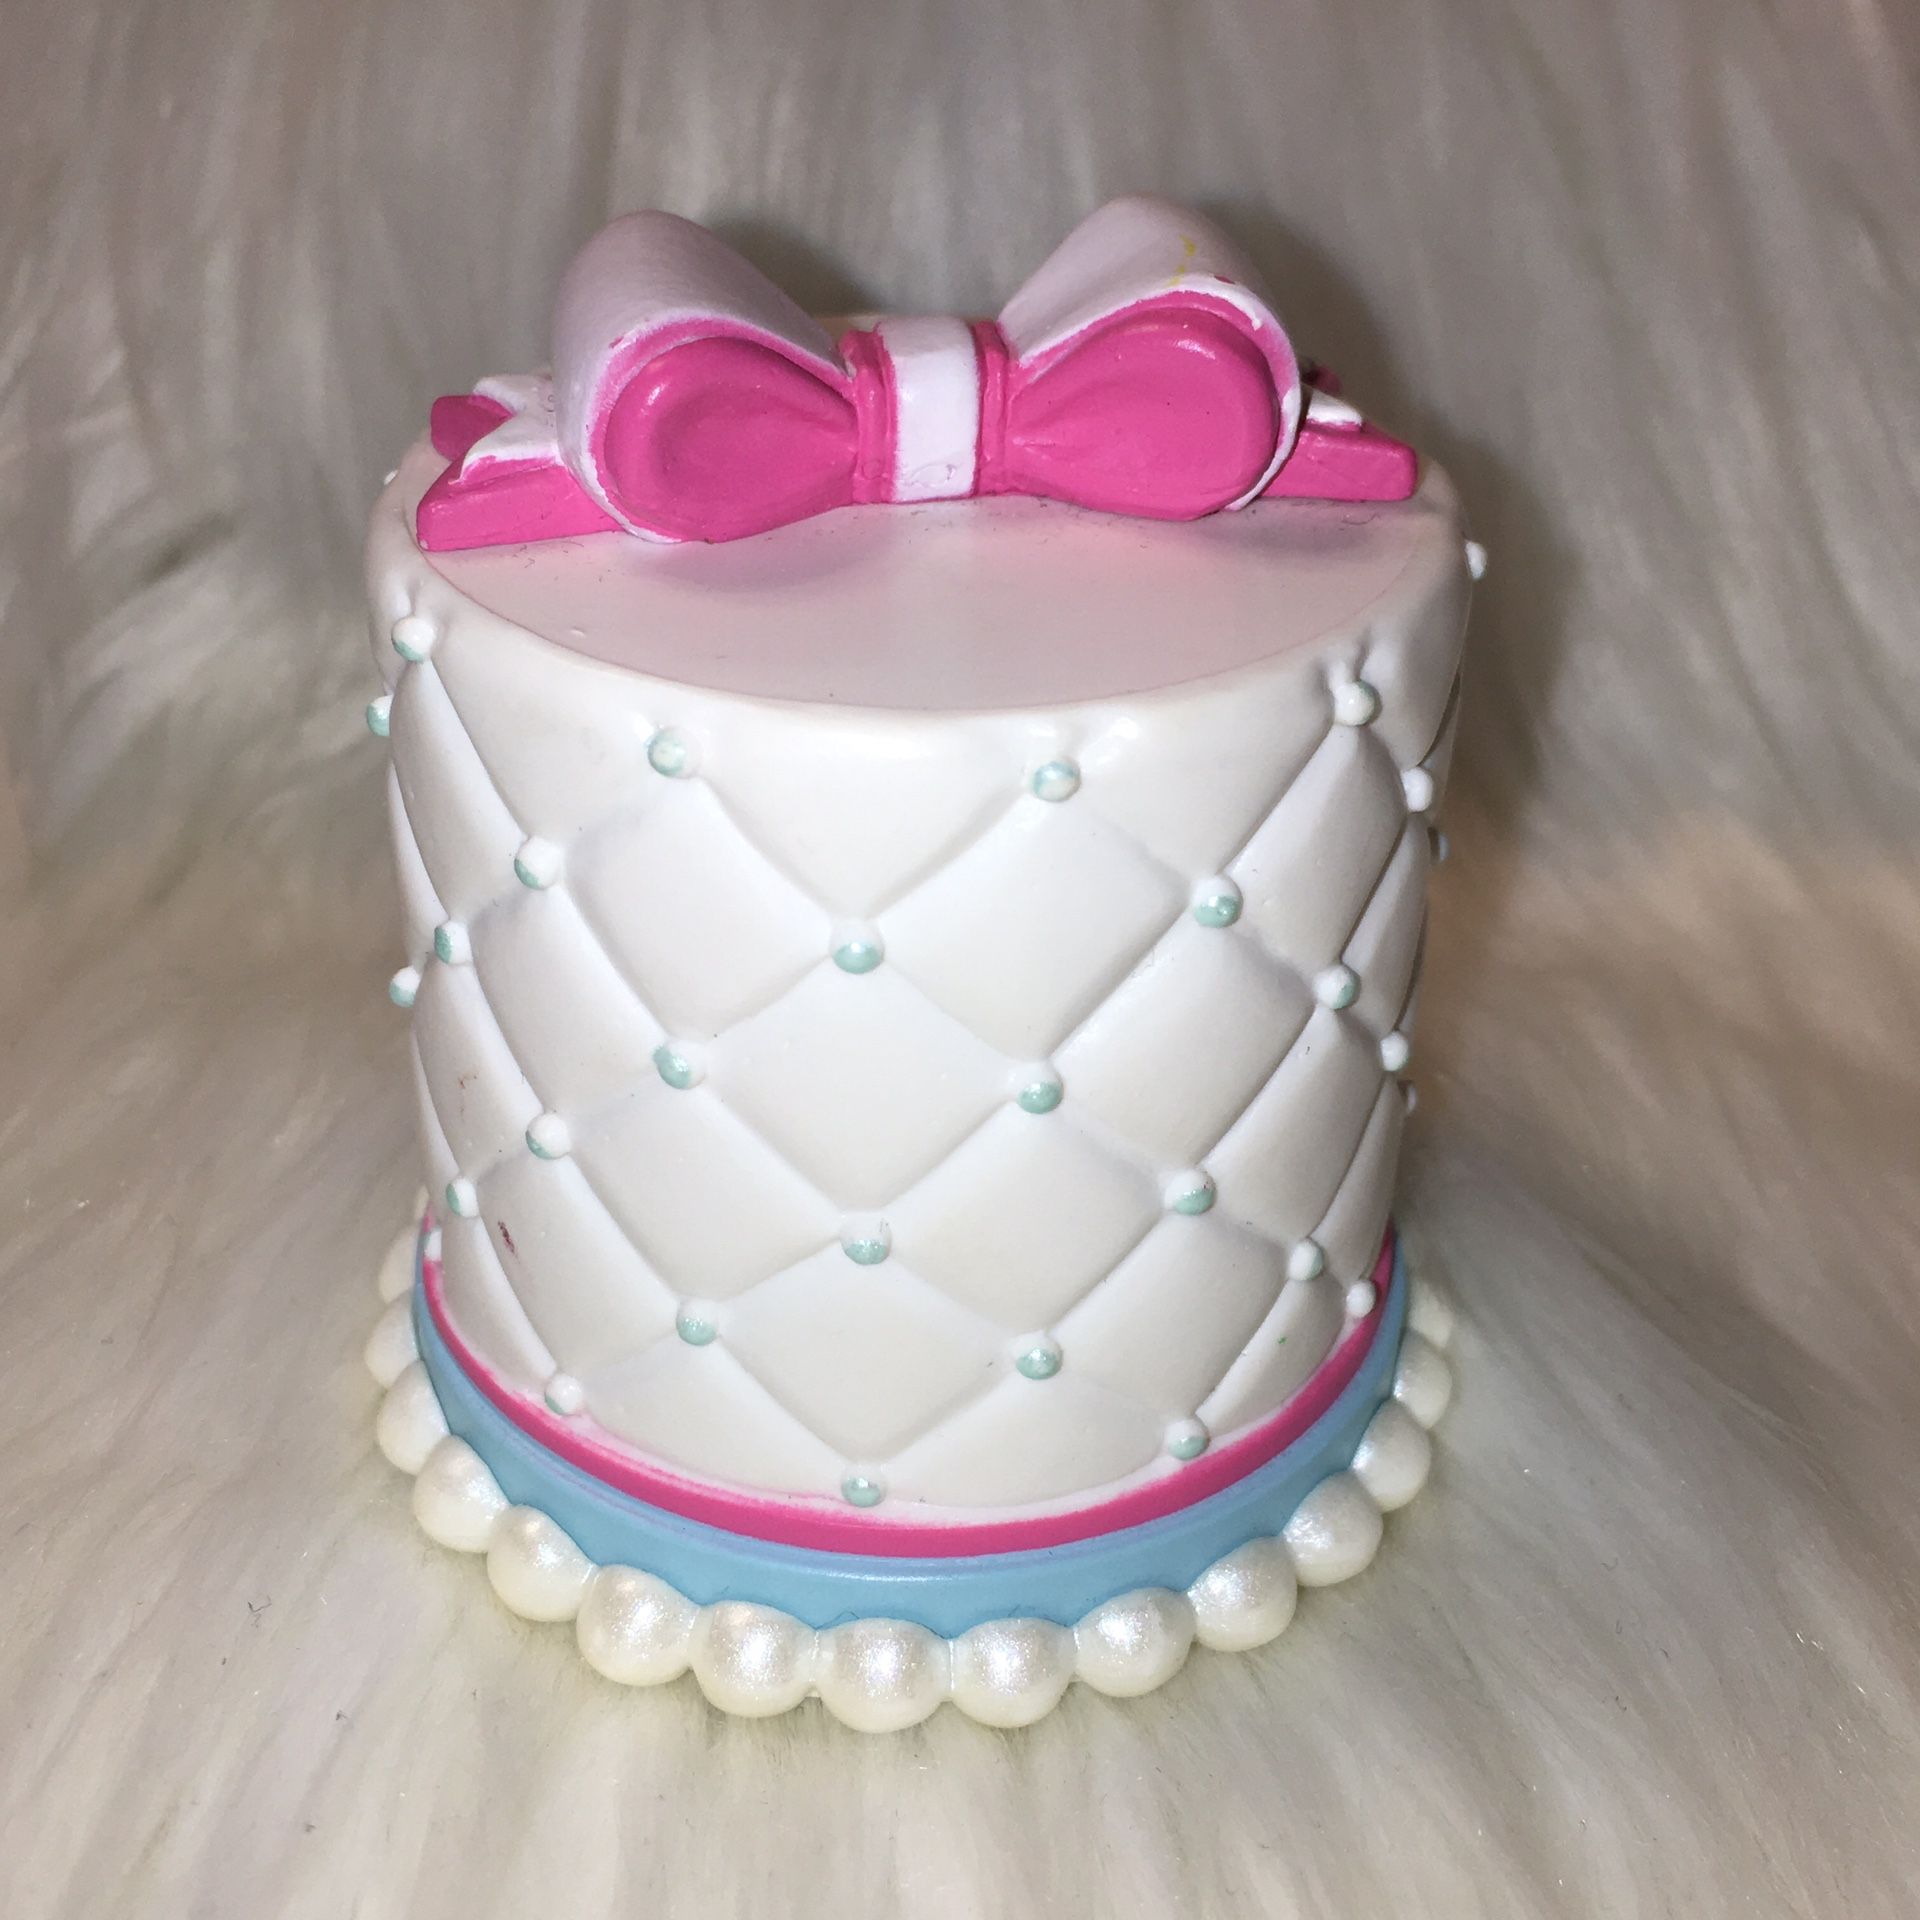 American Girl Grace's White Cake